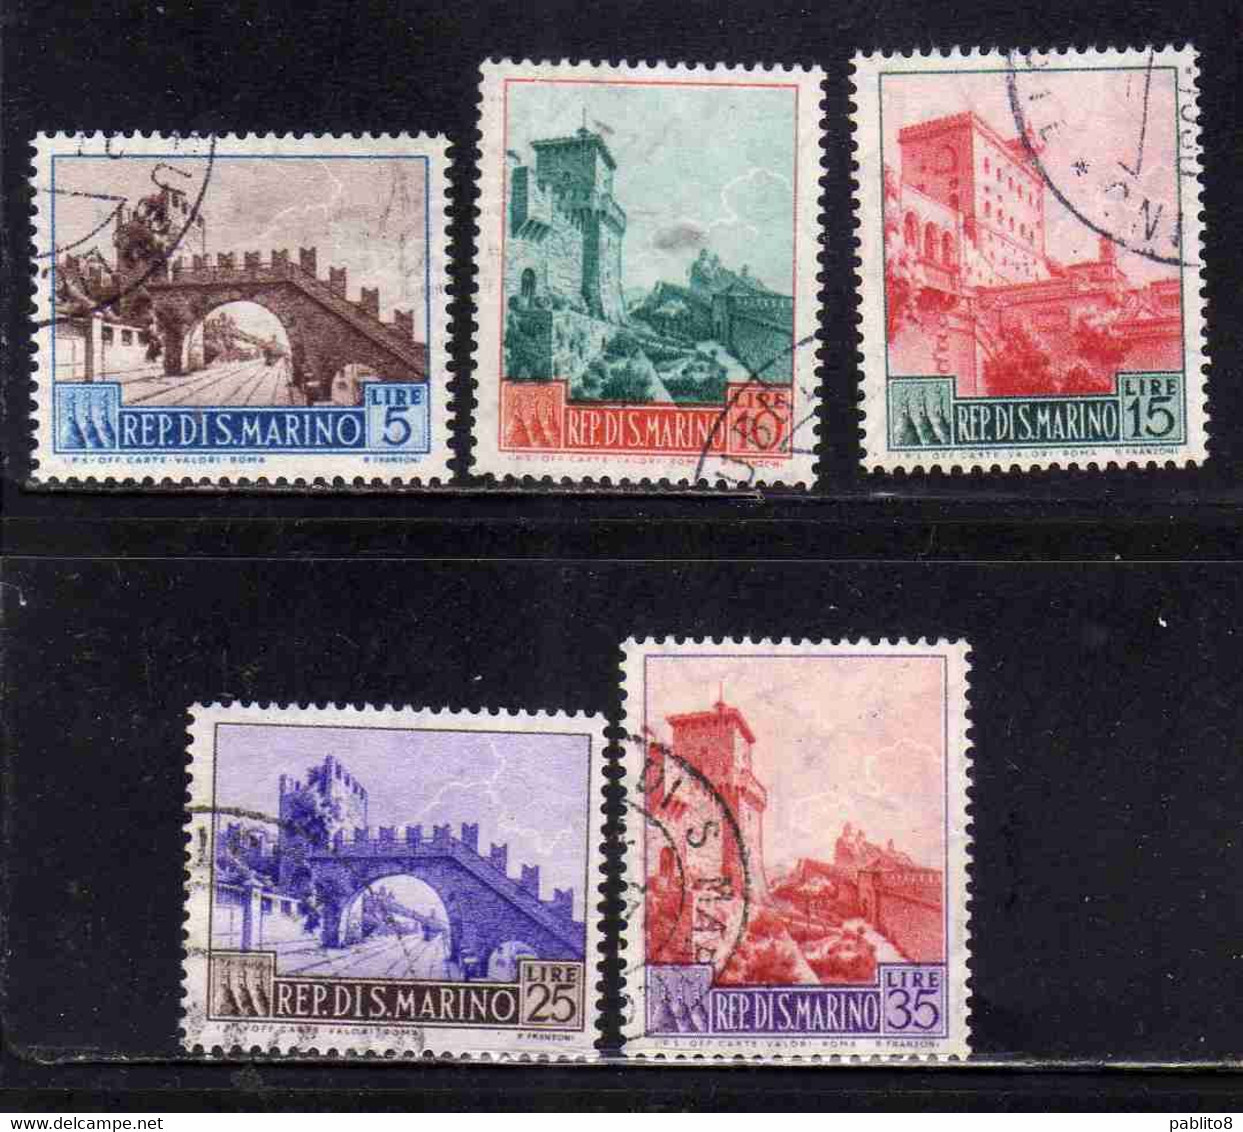 REPUBBLICA DI SAN MARINO 1955 VEDUTE VIEWS SERIE COMPLETA COMPLETE SET USATO USED OBLITERE' - Used Stamps